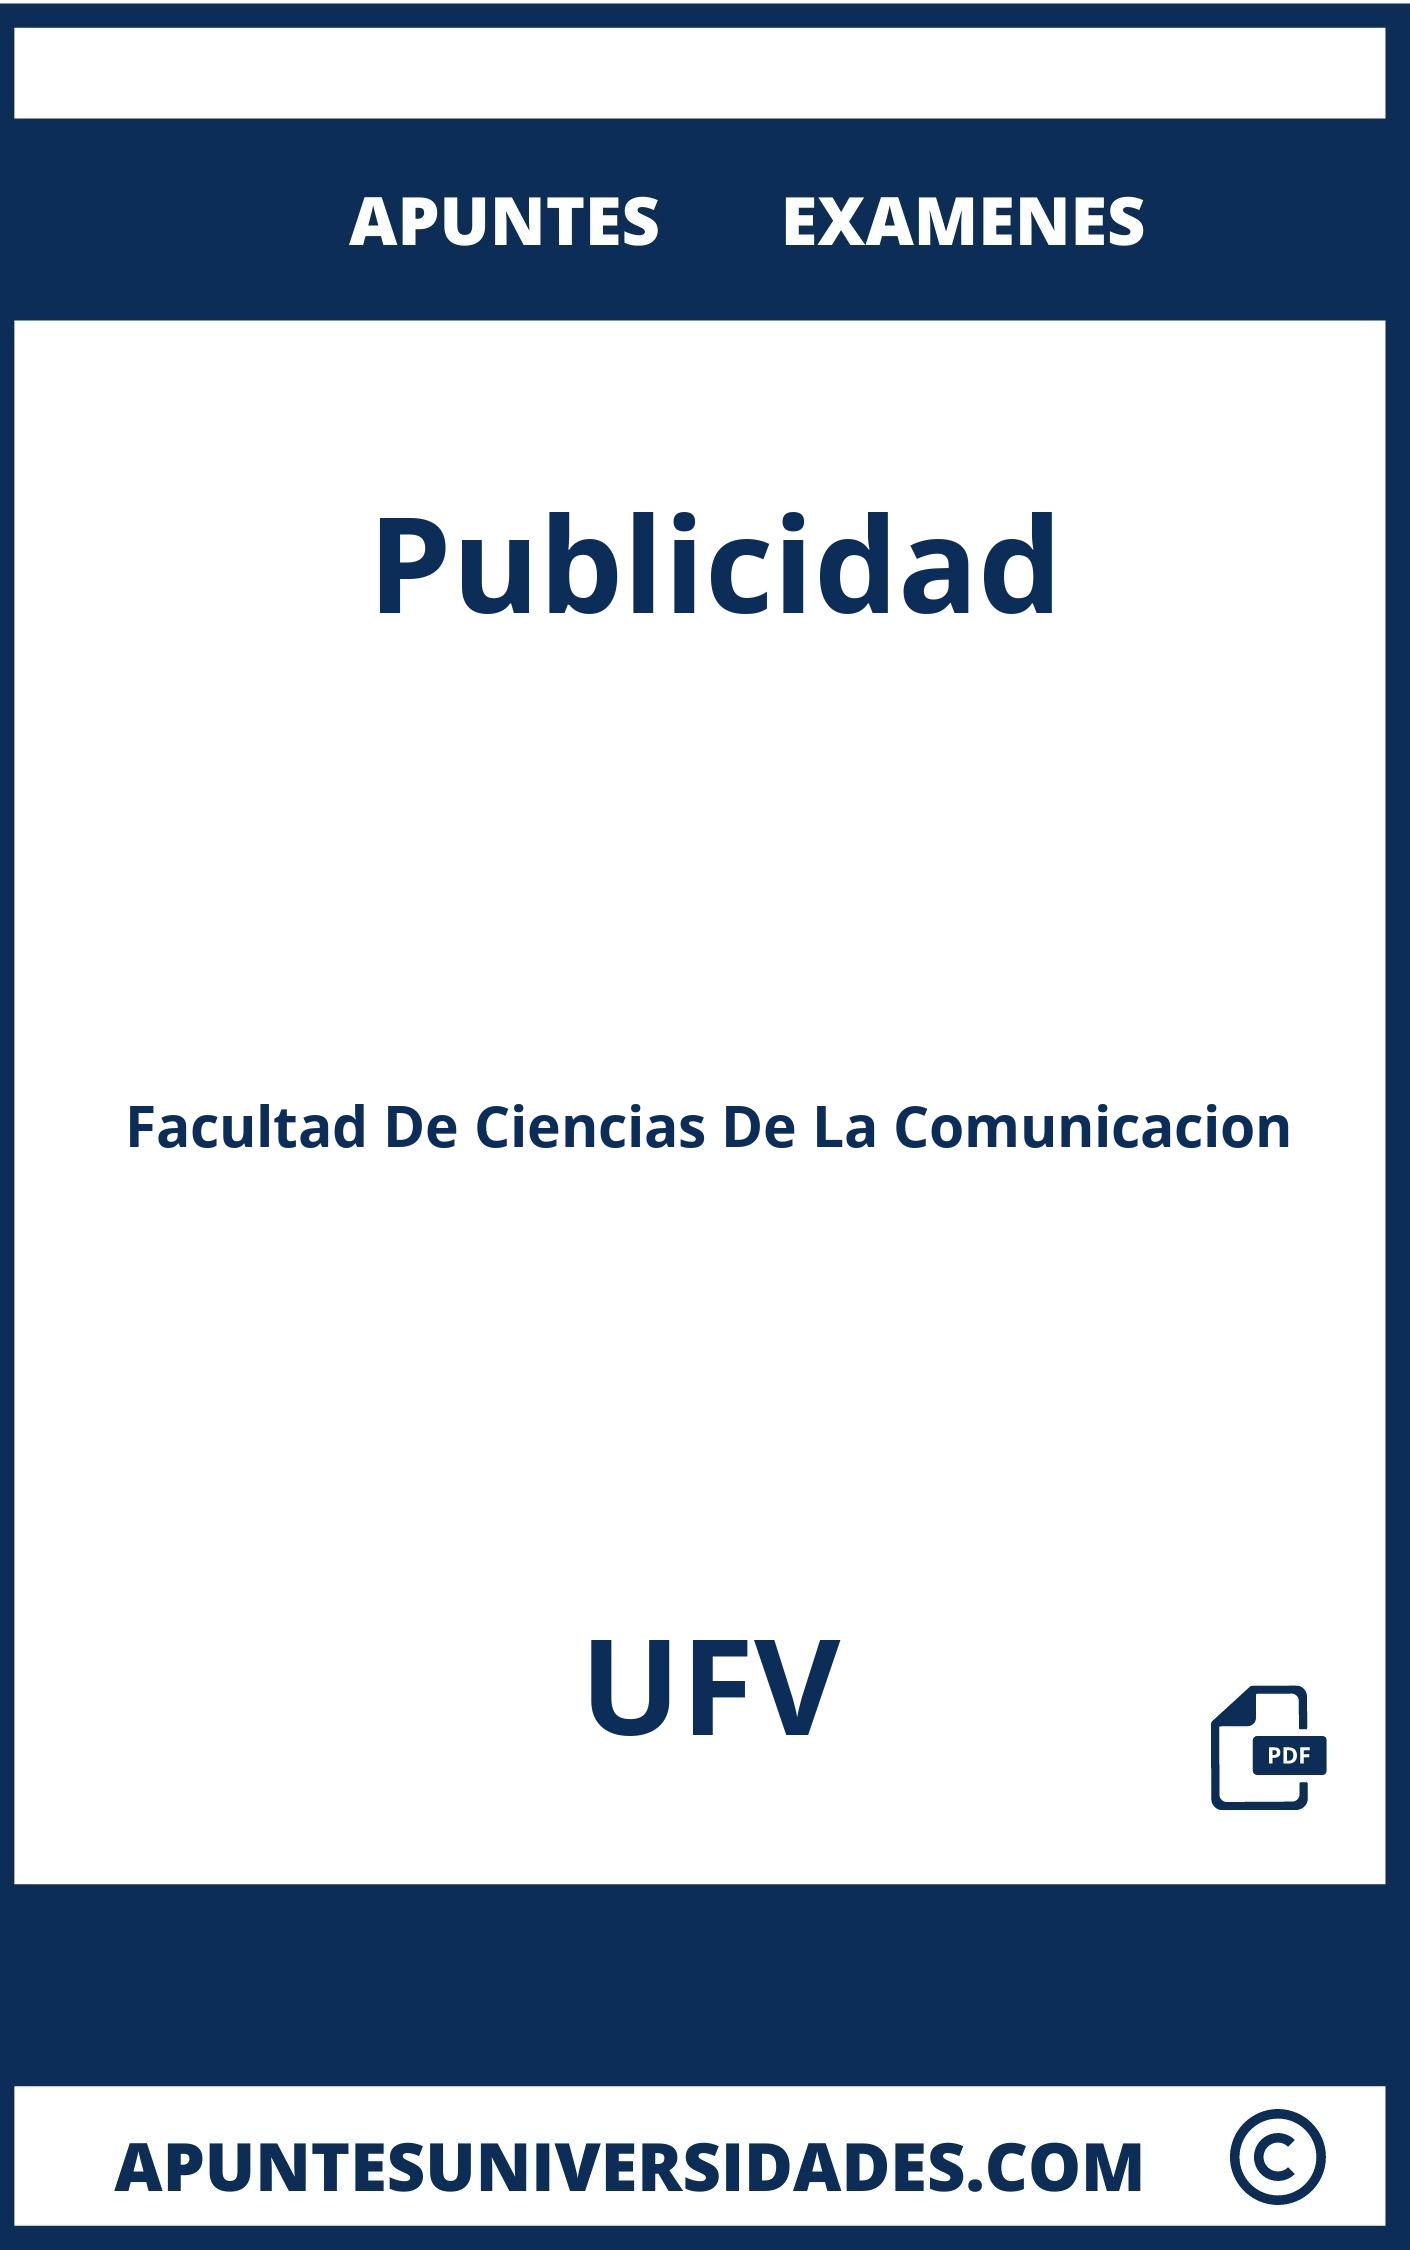 Examenes y Apuntes Publicidad UFV